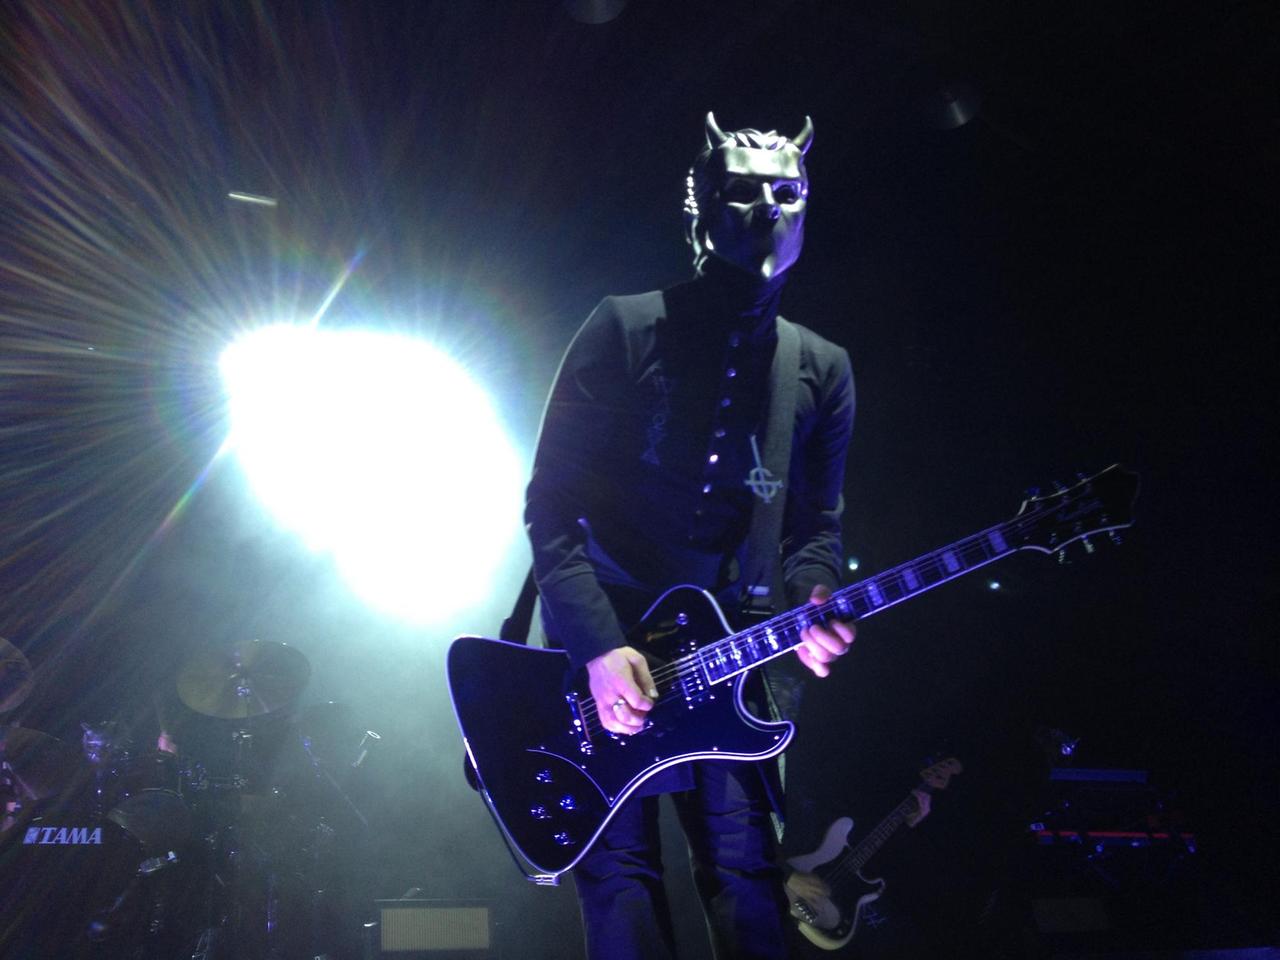 Gitarrist mit Teufelsmaske auf einer Bühne